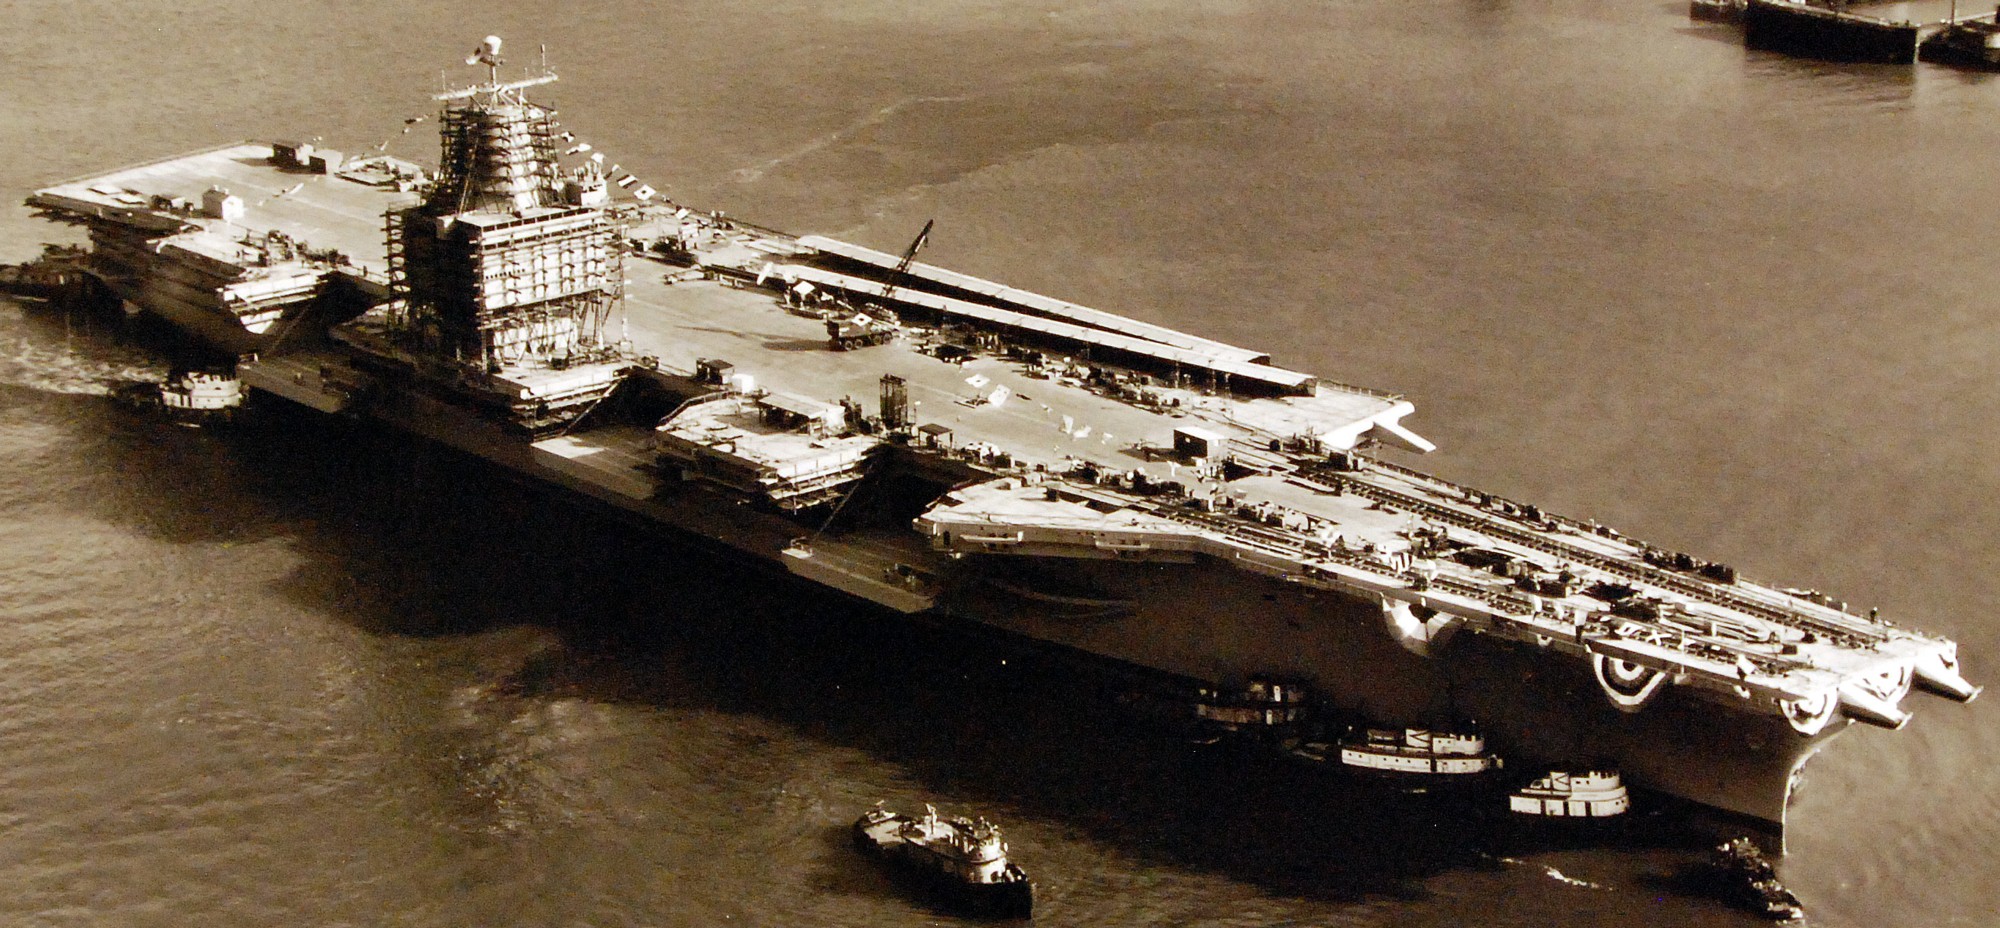 cvan-65 uss enterprise aircraft carrier us navy launch newport news 1960 109